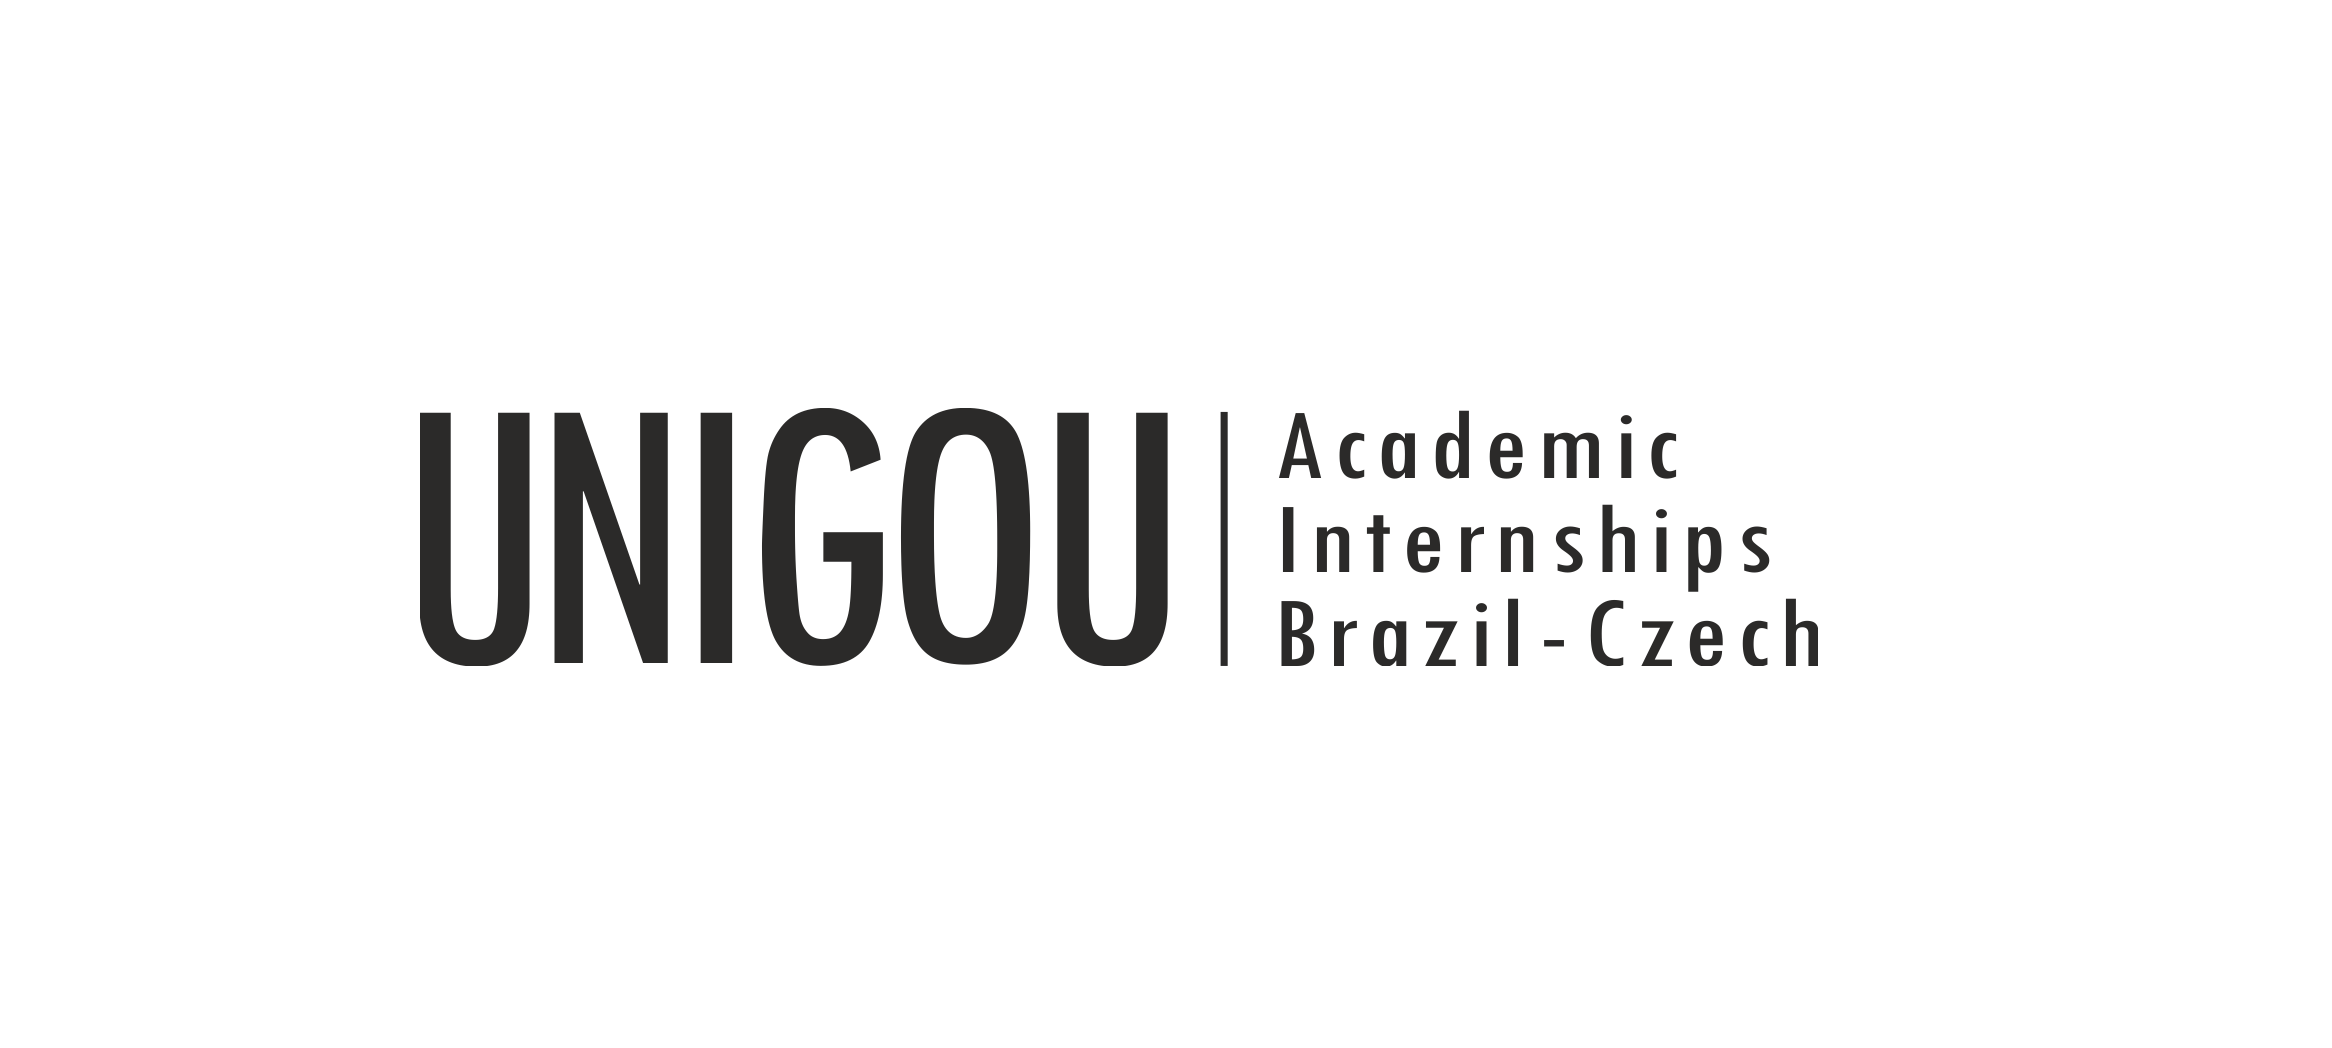 UNIGOU Academic Internships – UNIGOU REMOTE 2024 – Inscrições Prorrogadas